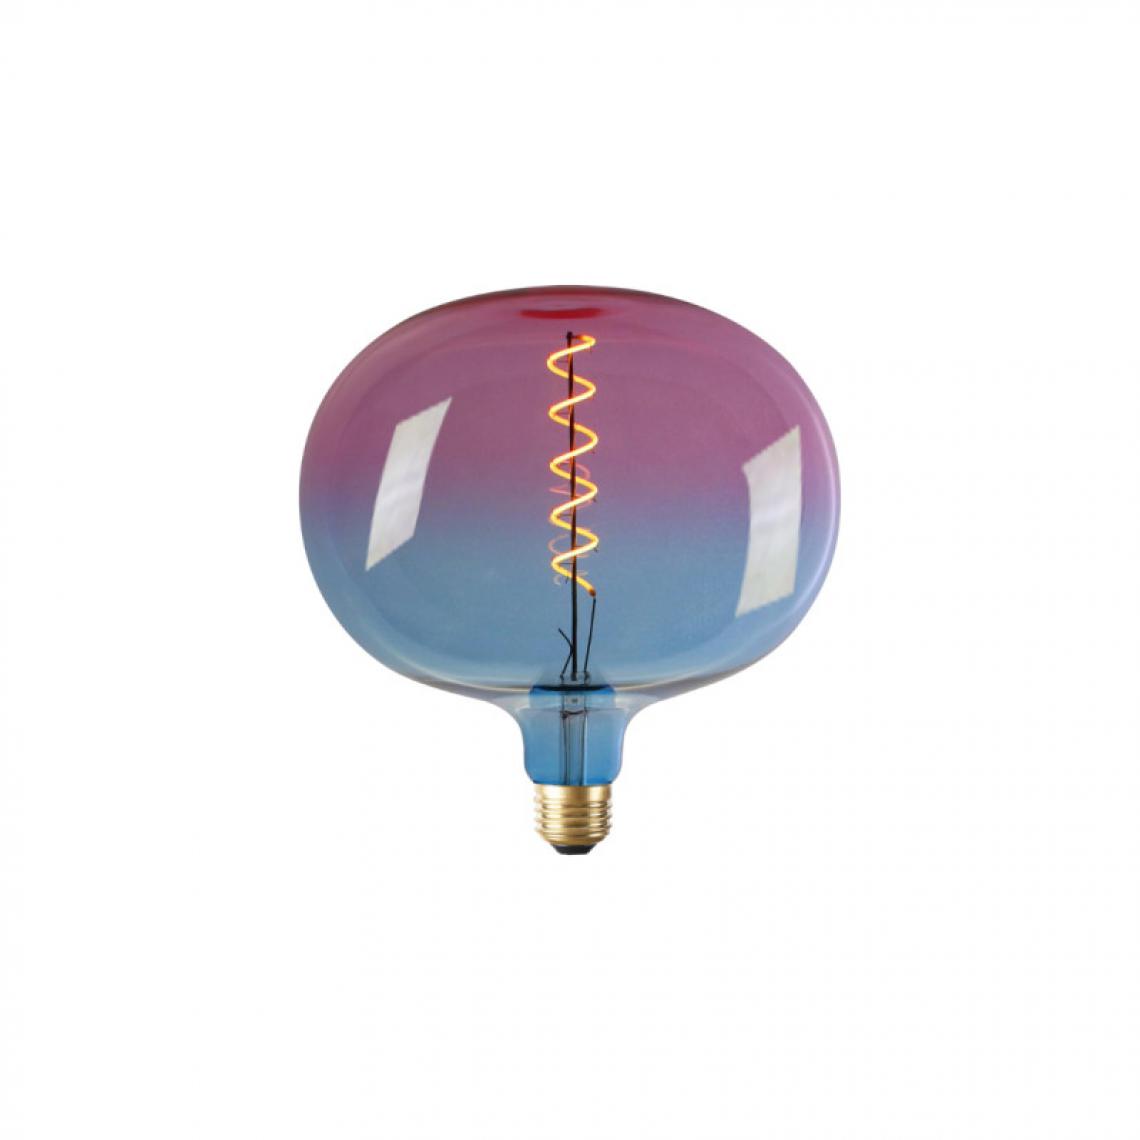 Xxcell - Ampoule LED décorative globe bleue-rose XXCELL - 4 W - 240 lumens - 3000 K - E27 - Ampoules LED